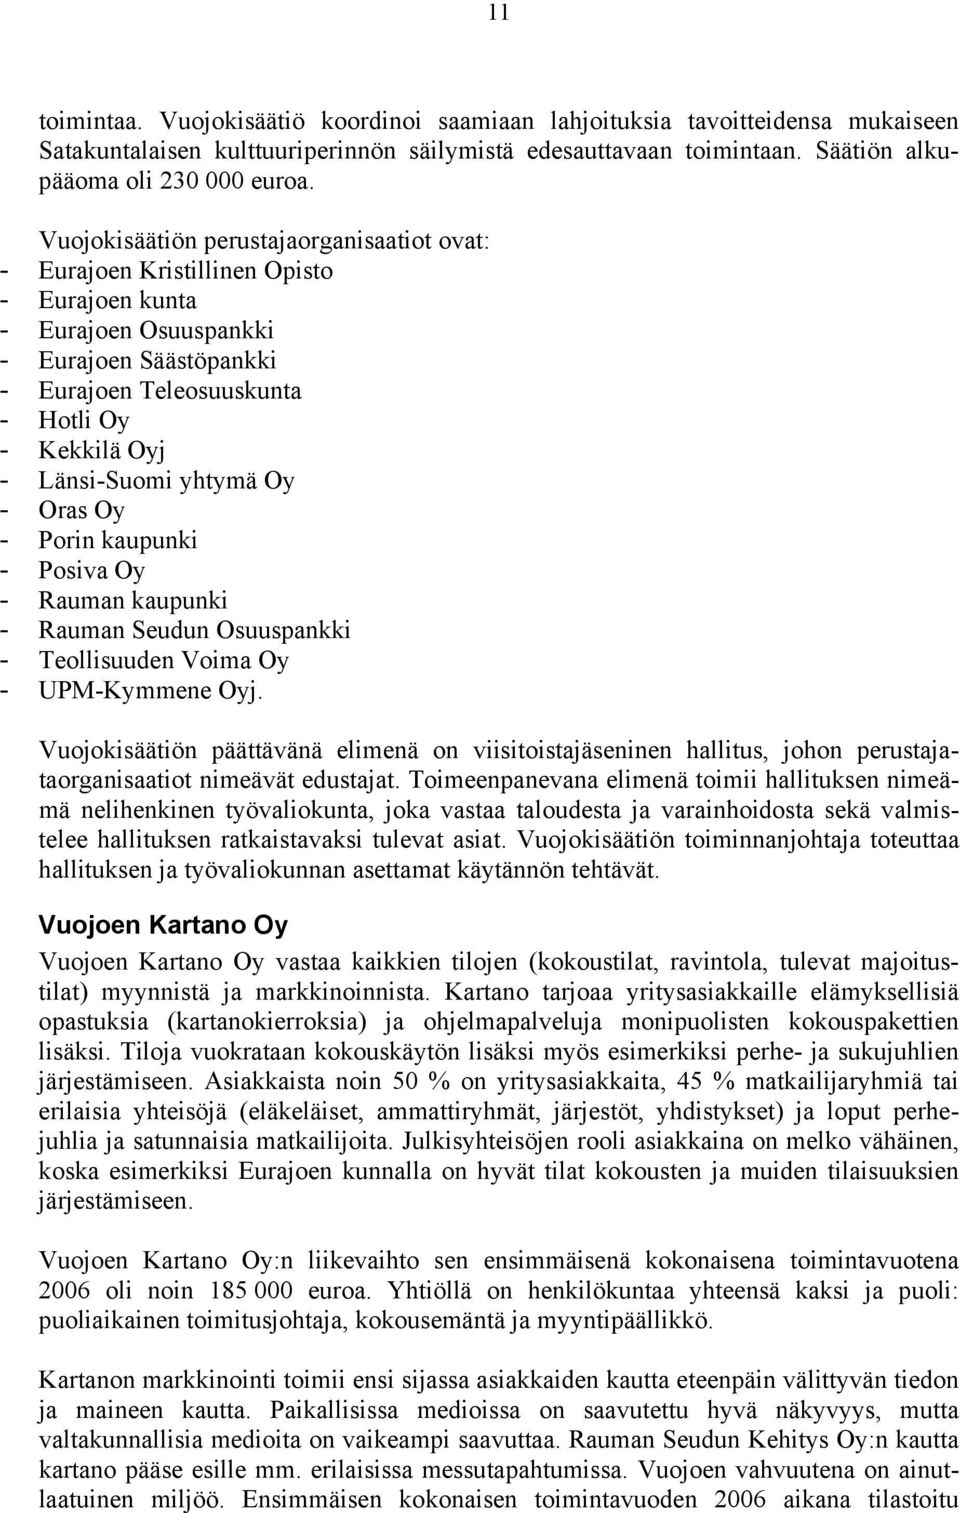 Länsi-Suomi yhtymä Oy - Oras Oy - Porin kaupunki - Posiva Oy - Rauman kaupunki - Rauman Seudun Osuuspankki - Teollisuuden Voima Oy - UPM-Kymmene Oyj.